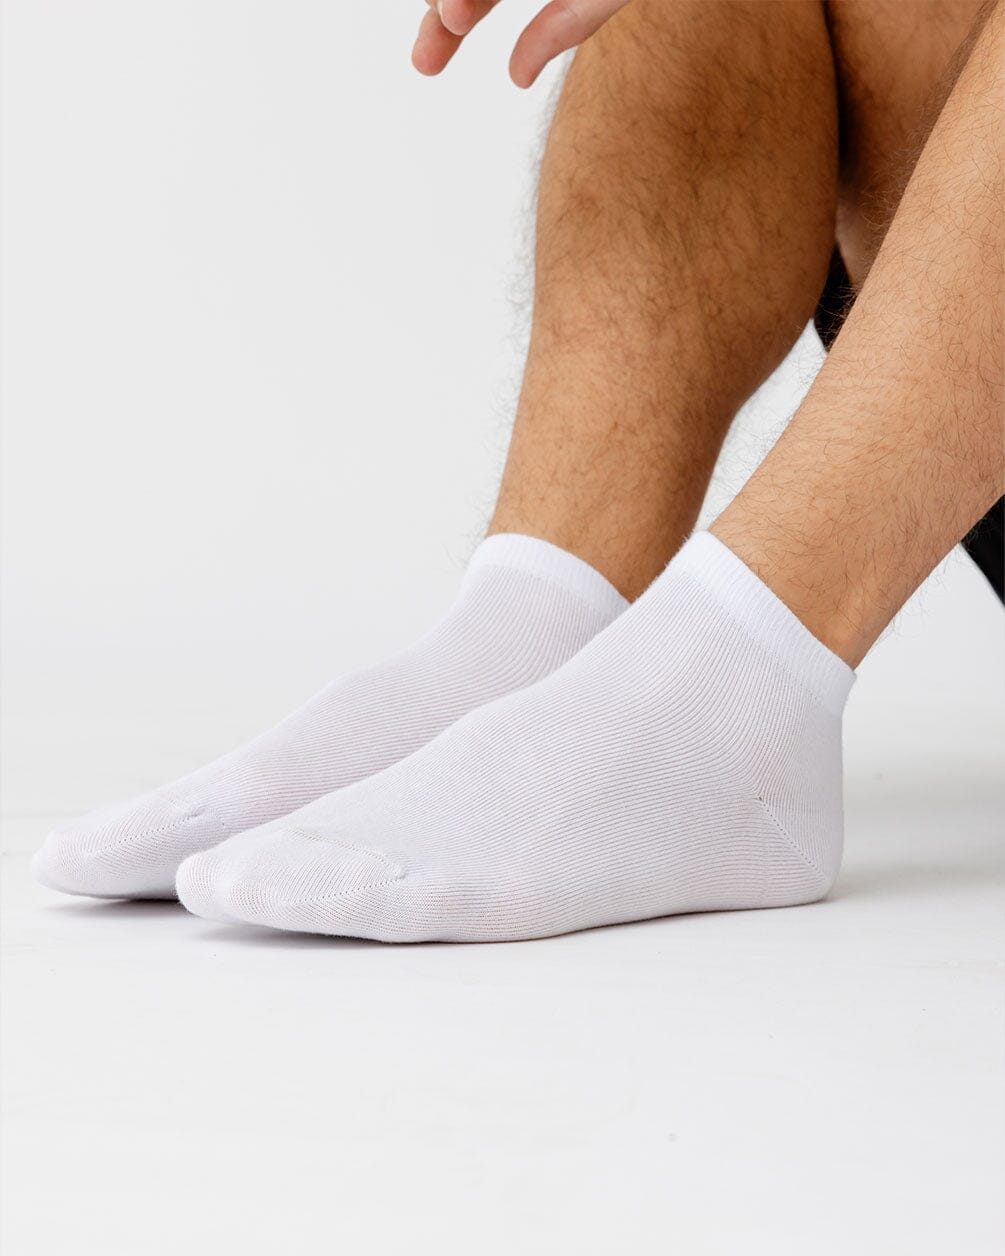 Solid White Short Socks Short Socks In Your Shoe 